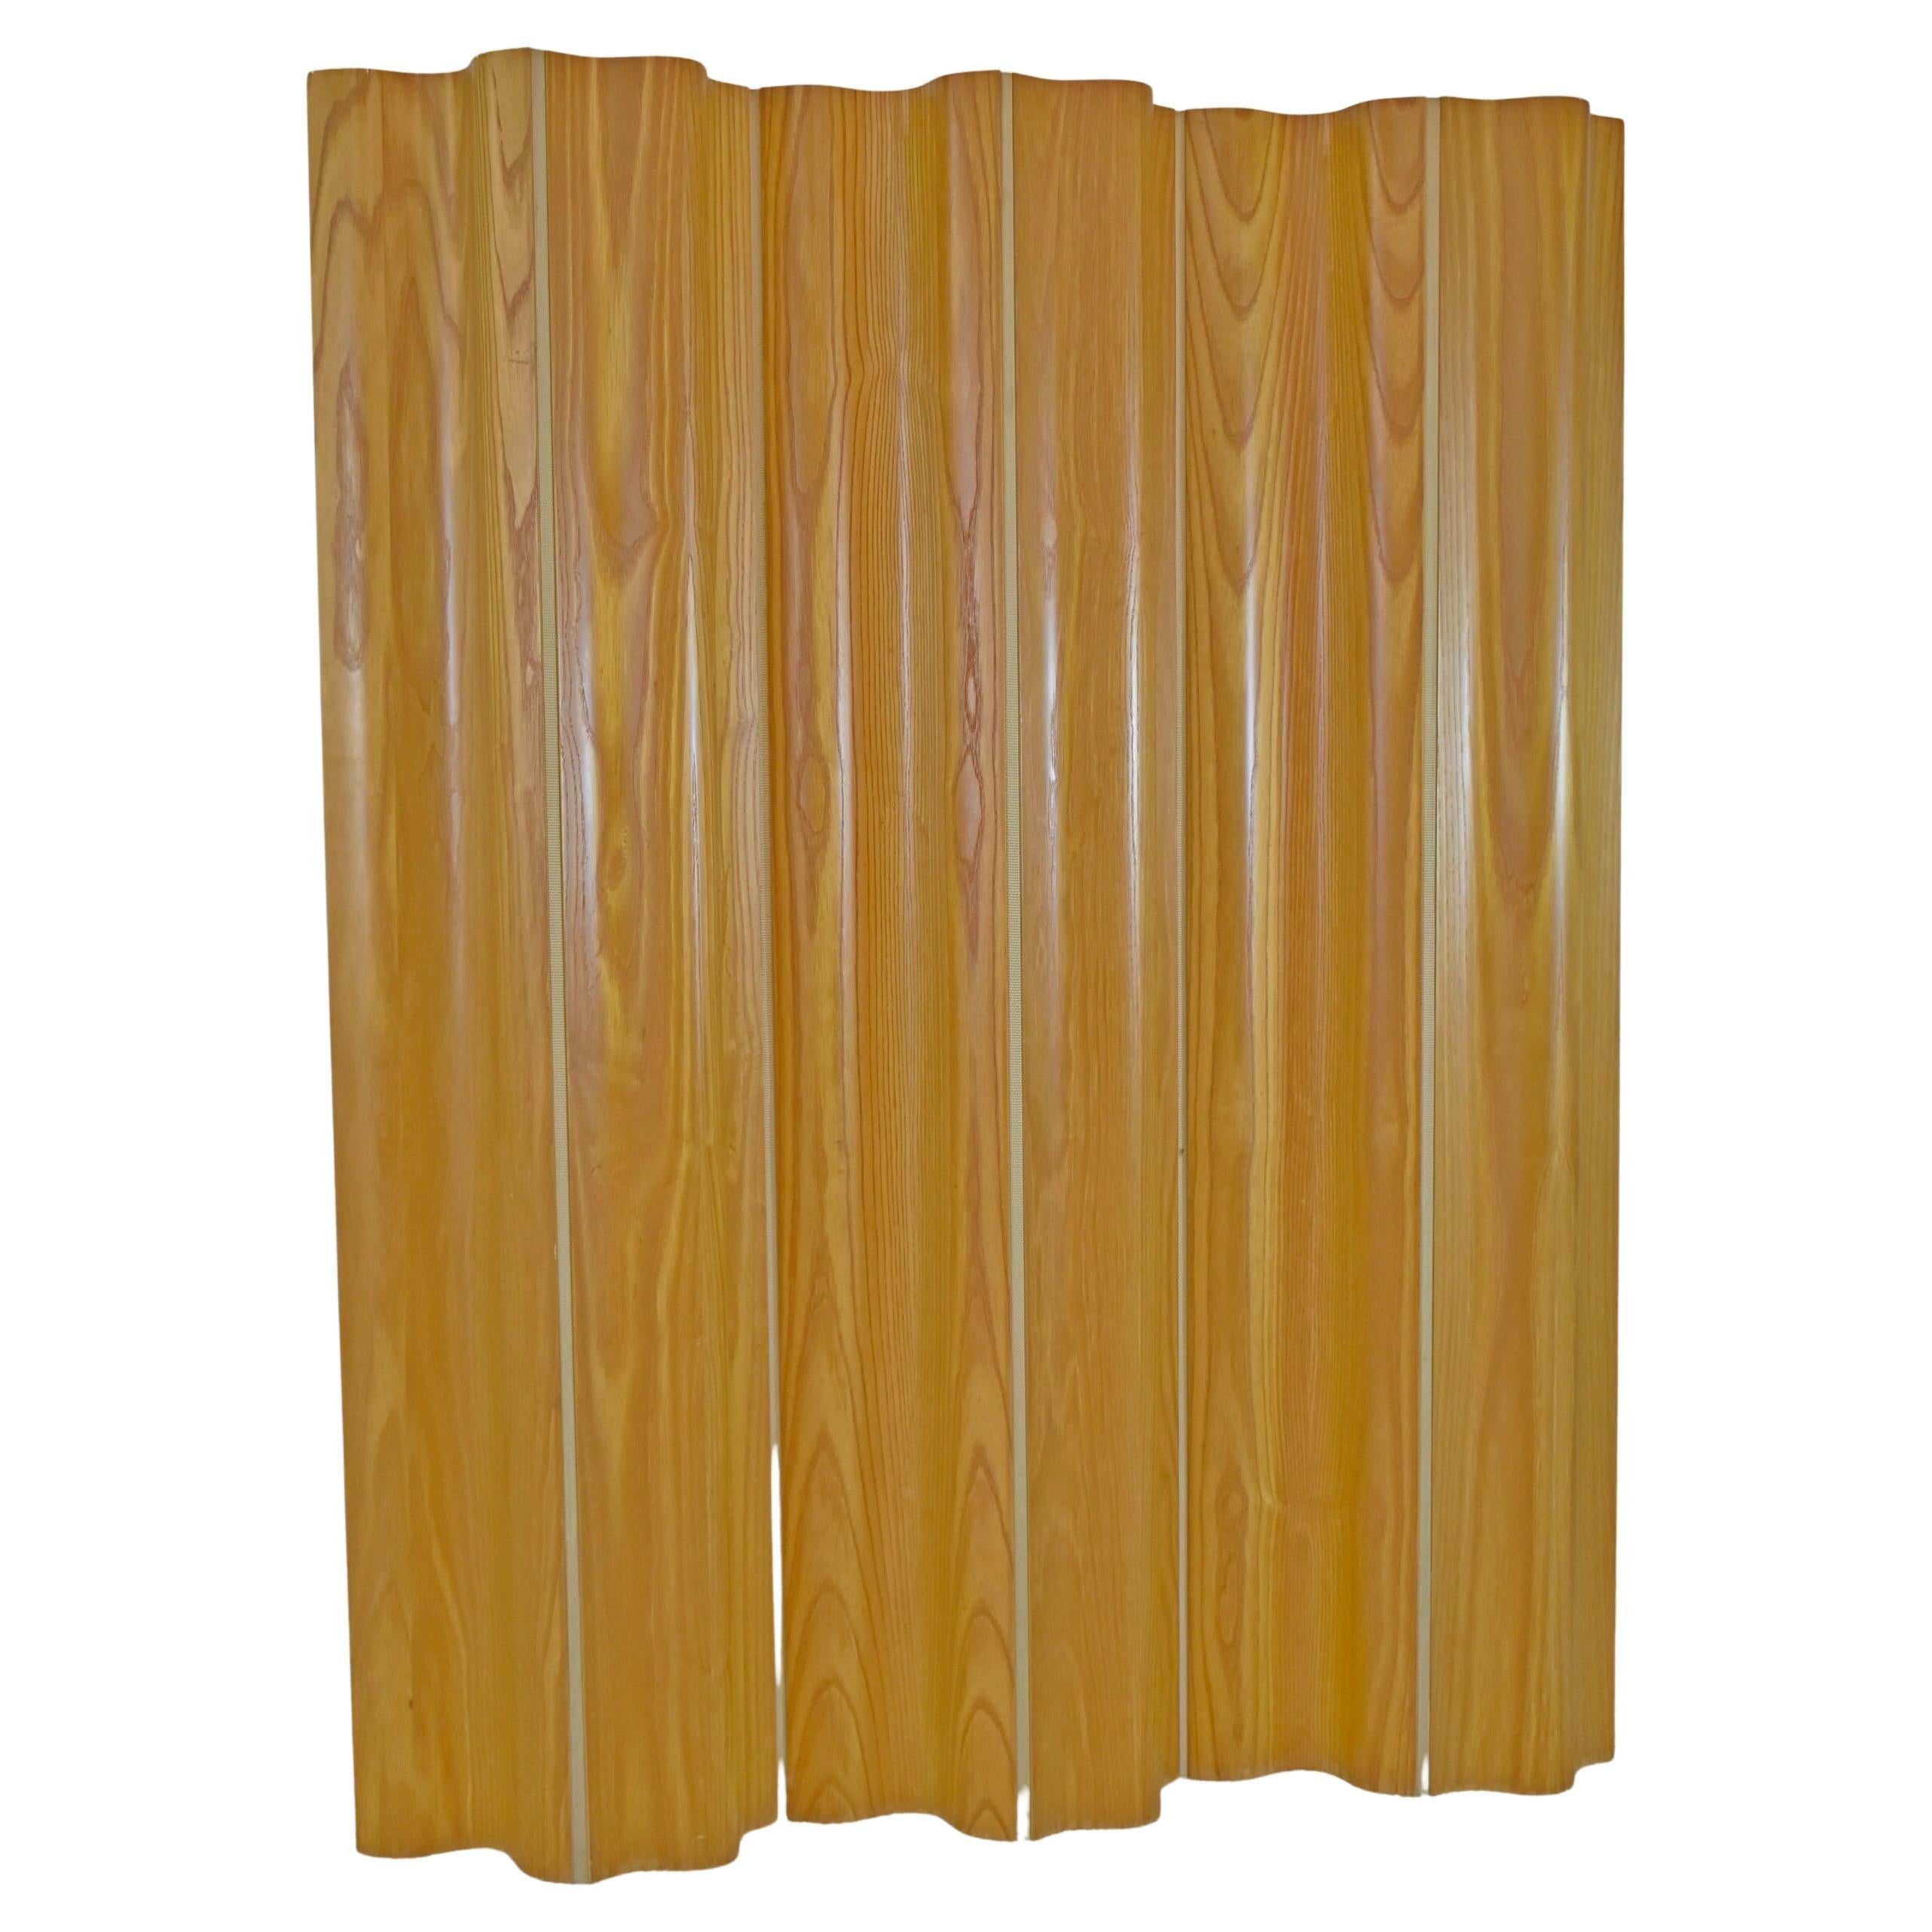 Eames 6 Panel Oak Room Divider by Herman Miller For Sale